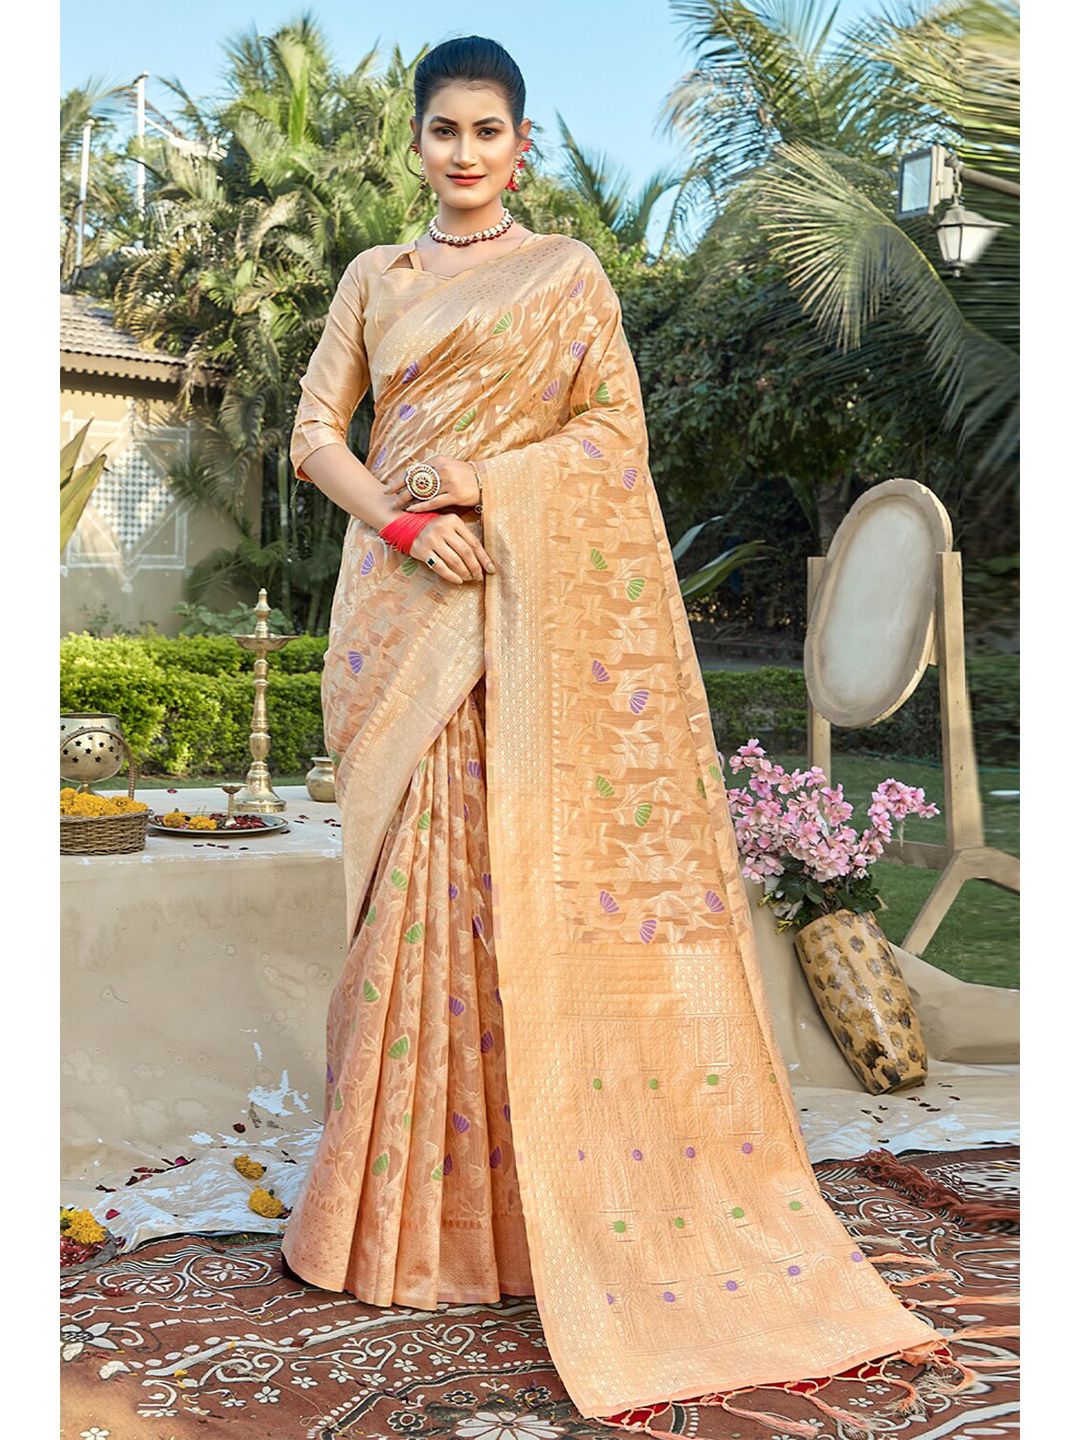 SANGAM PRINTS Peach-Coloured & Gold-Toned Woven Design Zari Saree Price in India